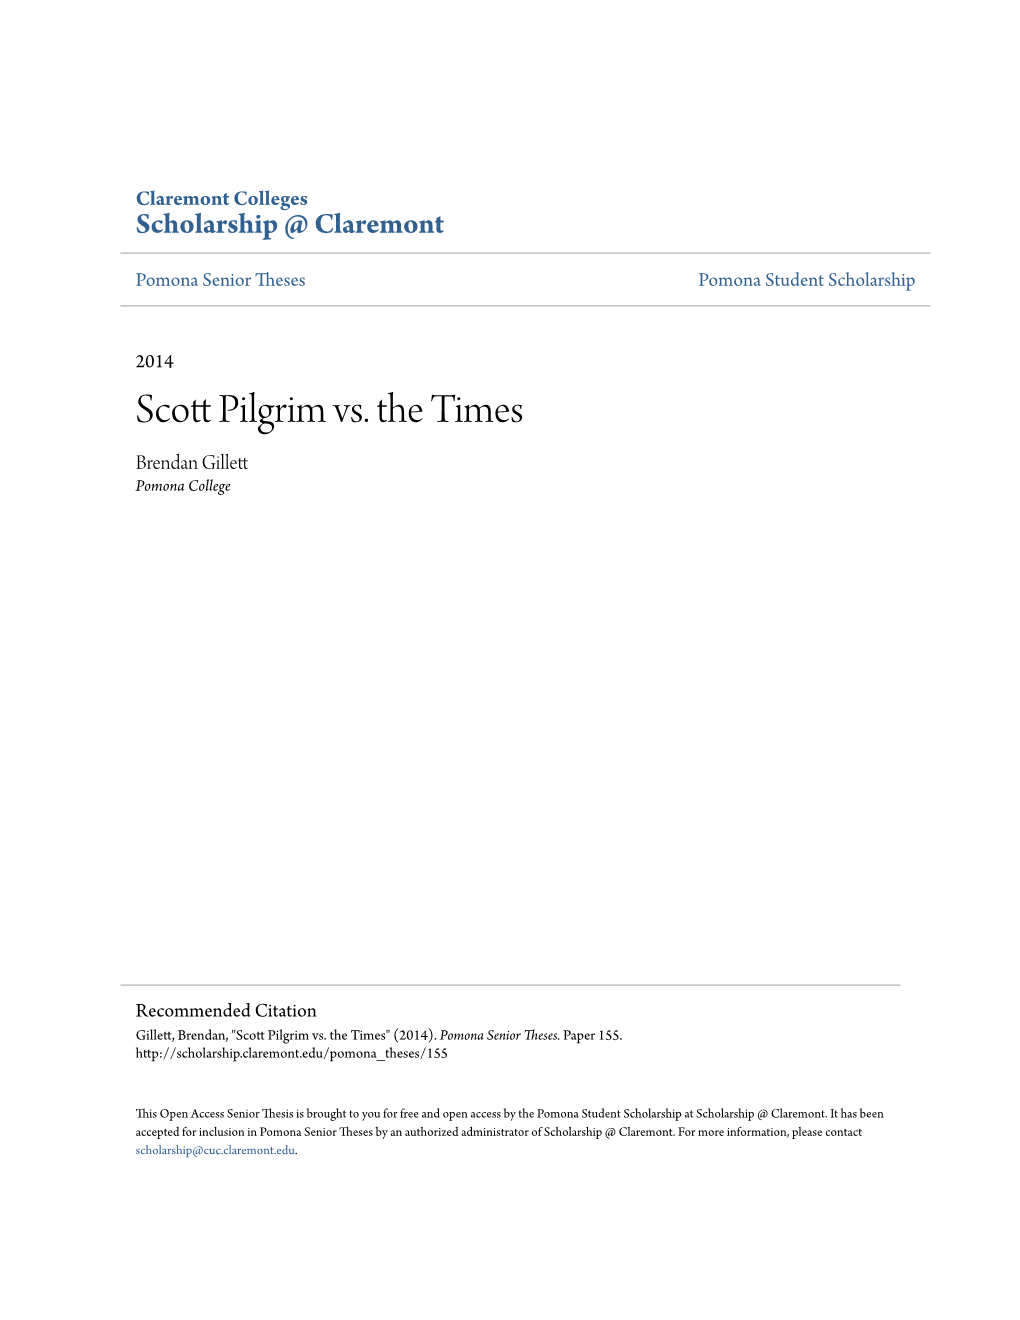 Scott Pilgrim Vs. the Times